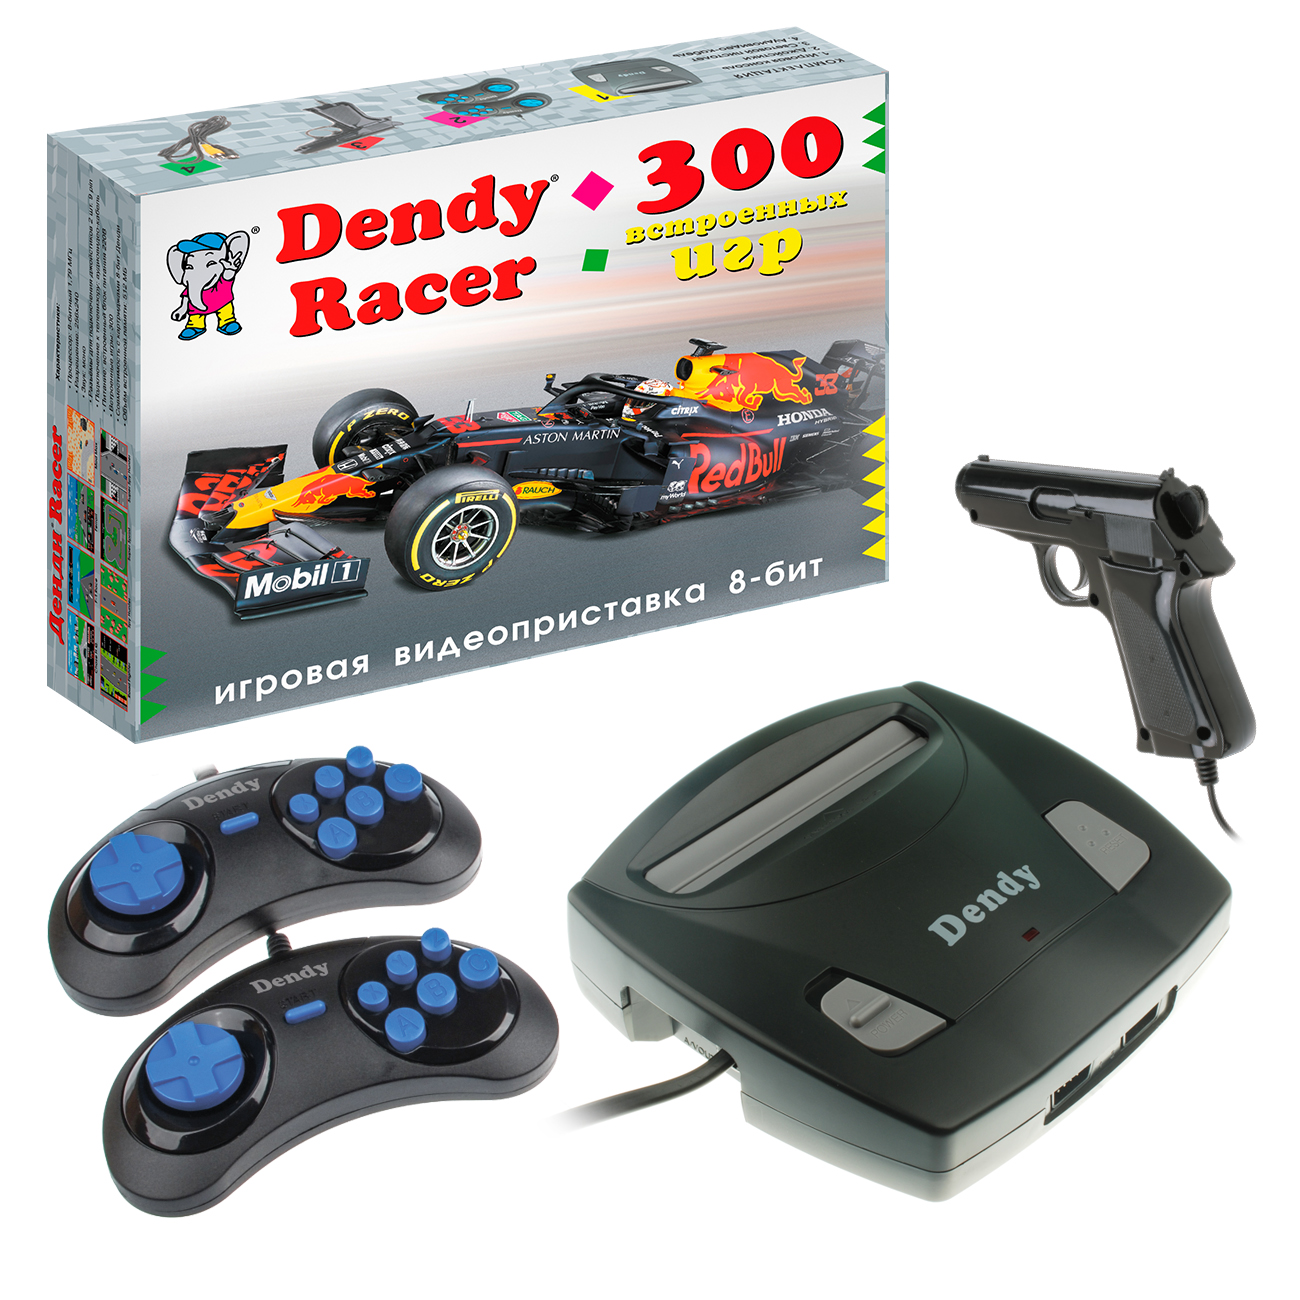 фото Игровая приставка 8-бит dendy racer 300 игр + световой пистолет